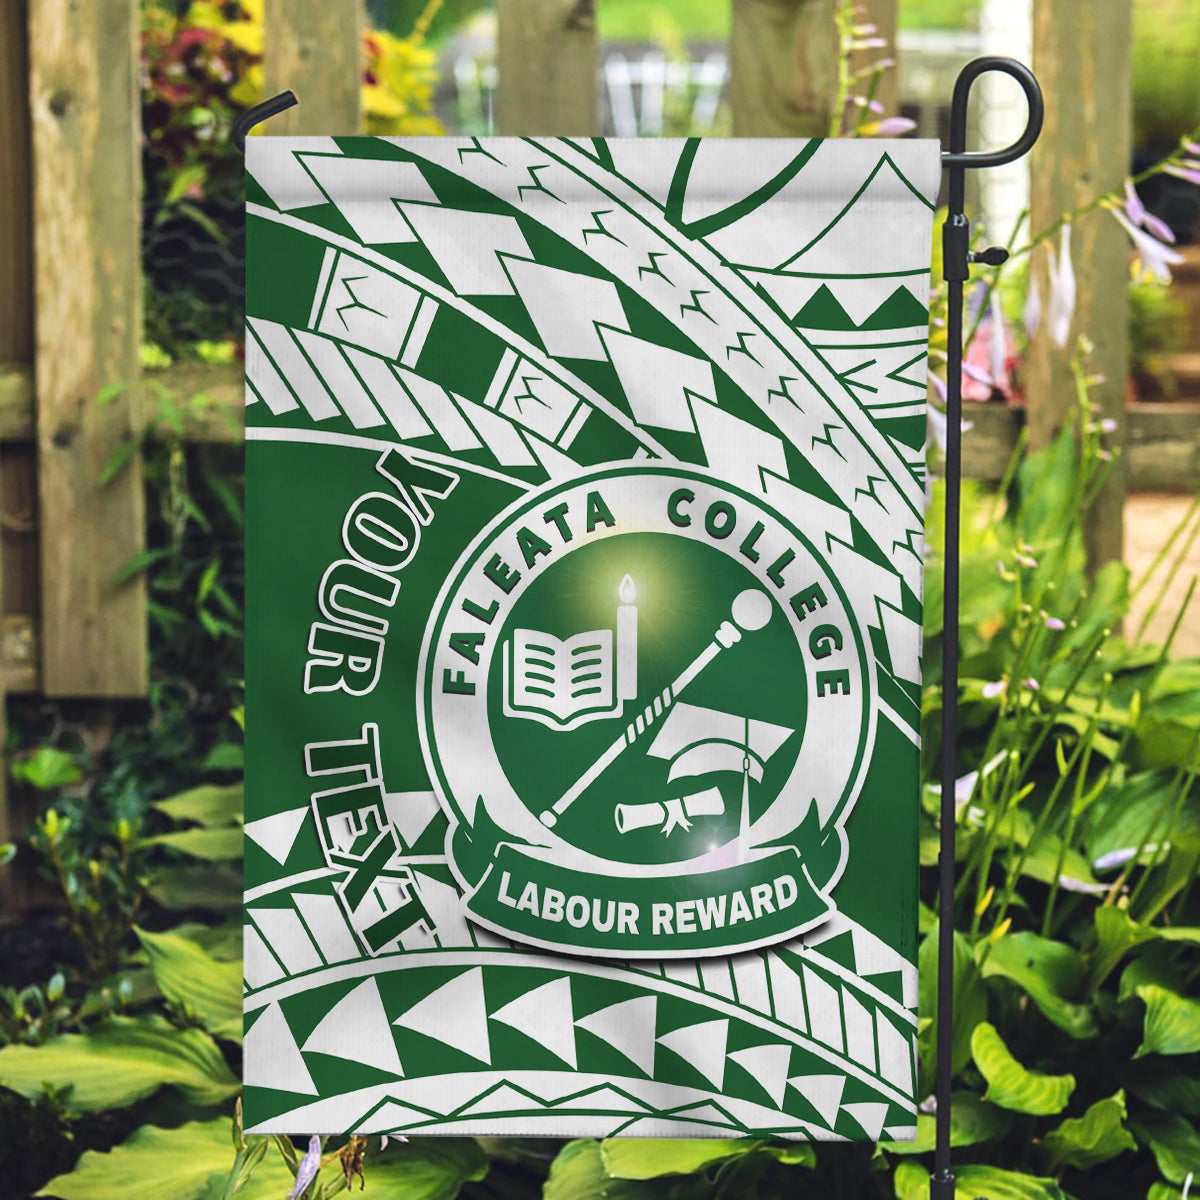 Personalised Samoa Faleata College Garden Flag Samoan Pattern LT14 Garden Flag Green - Polynesian Pride